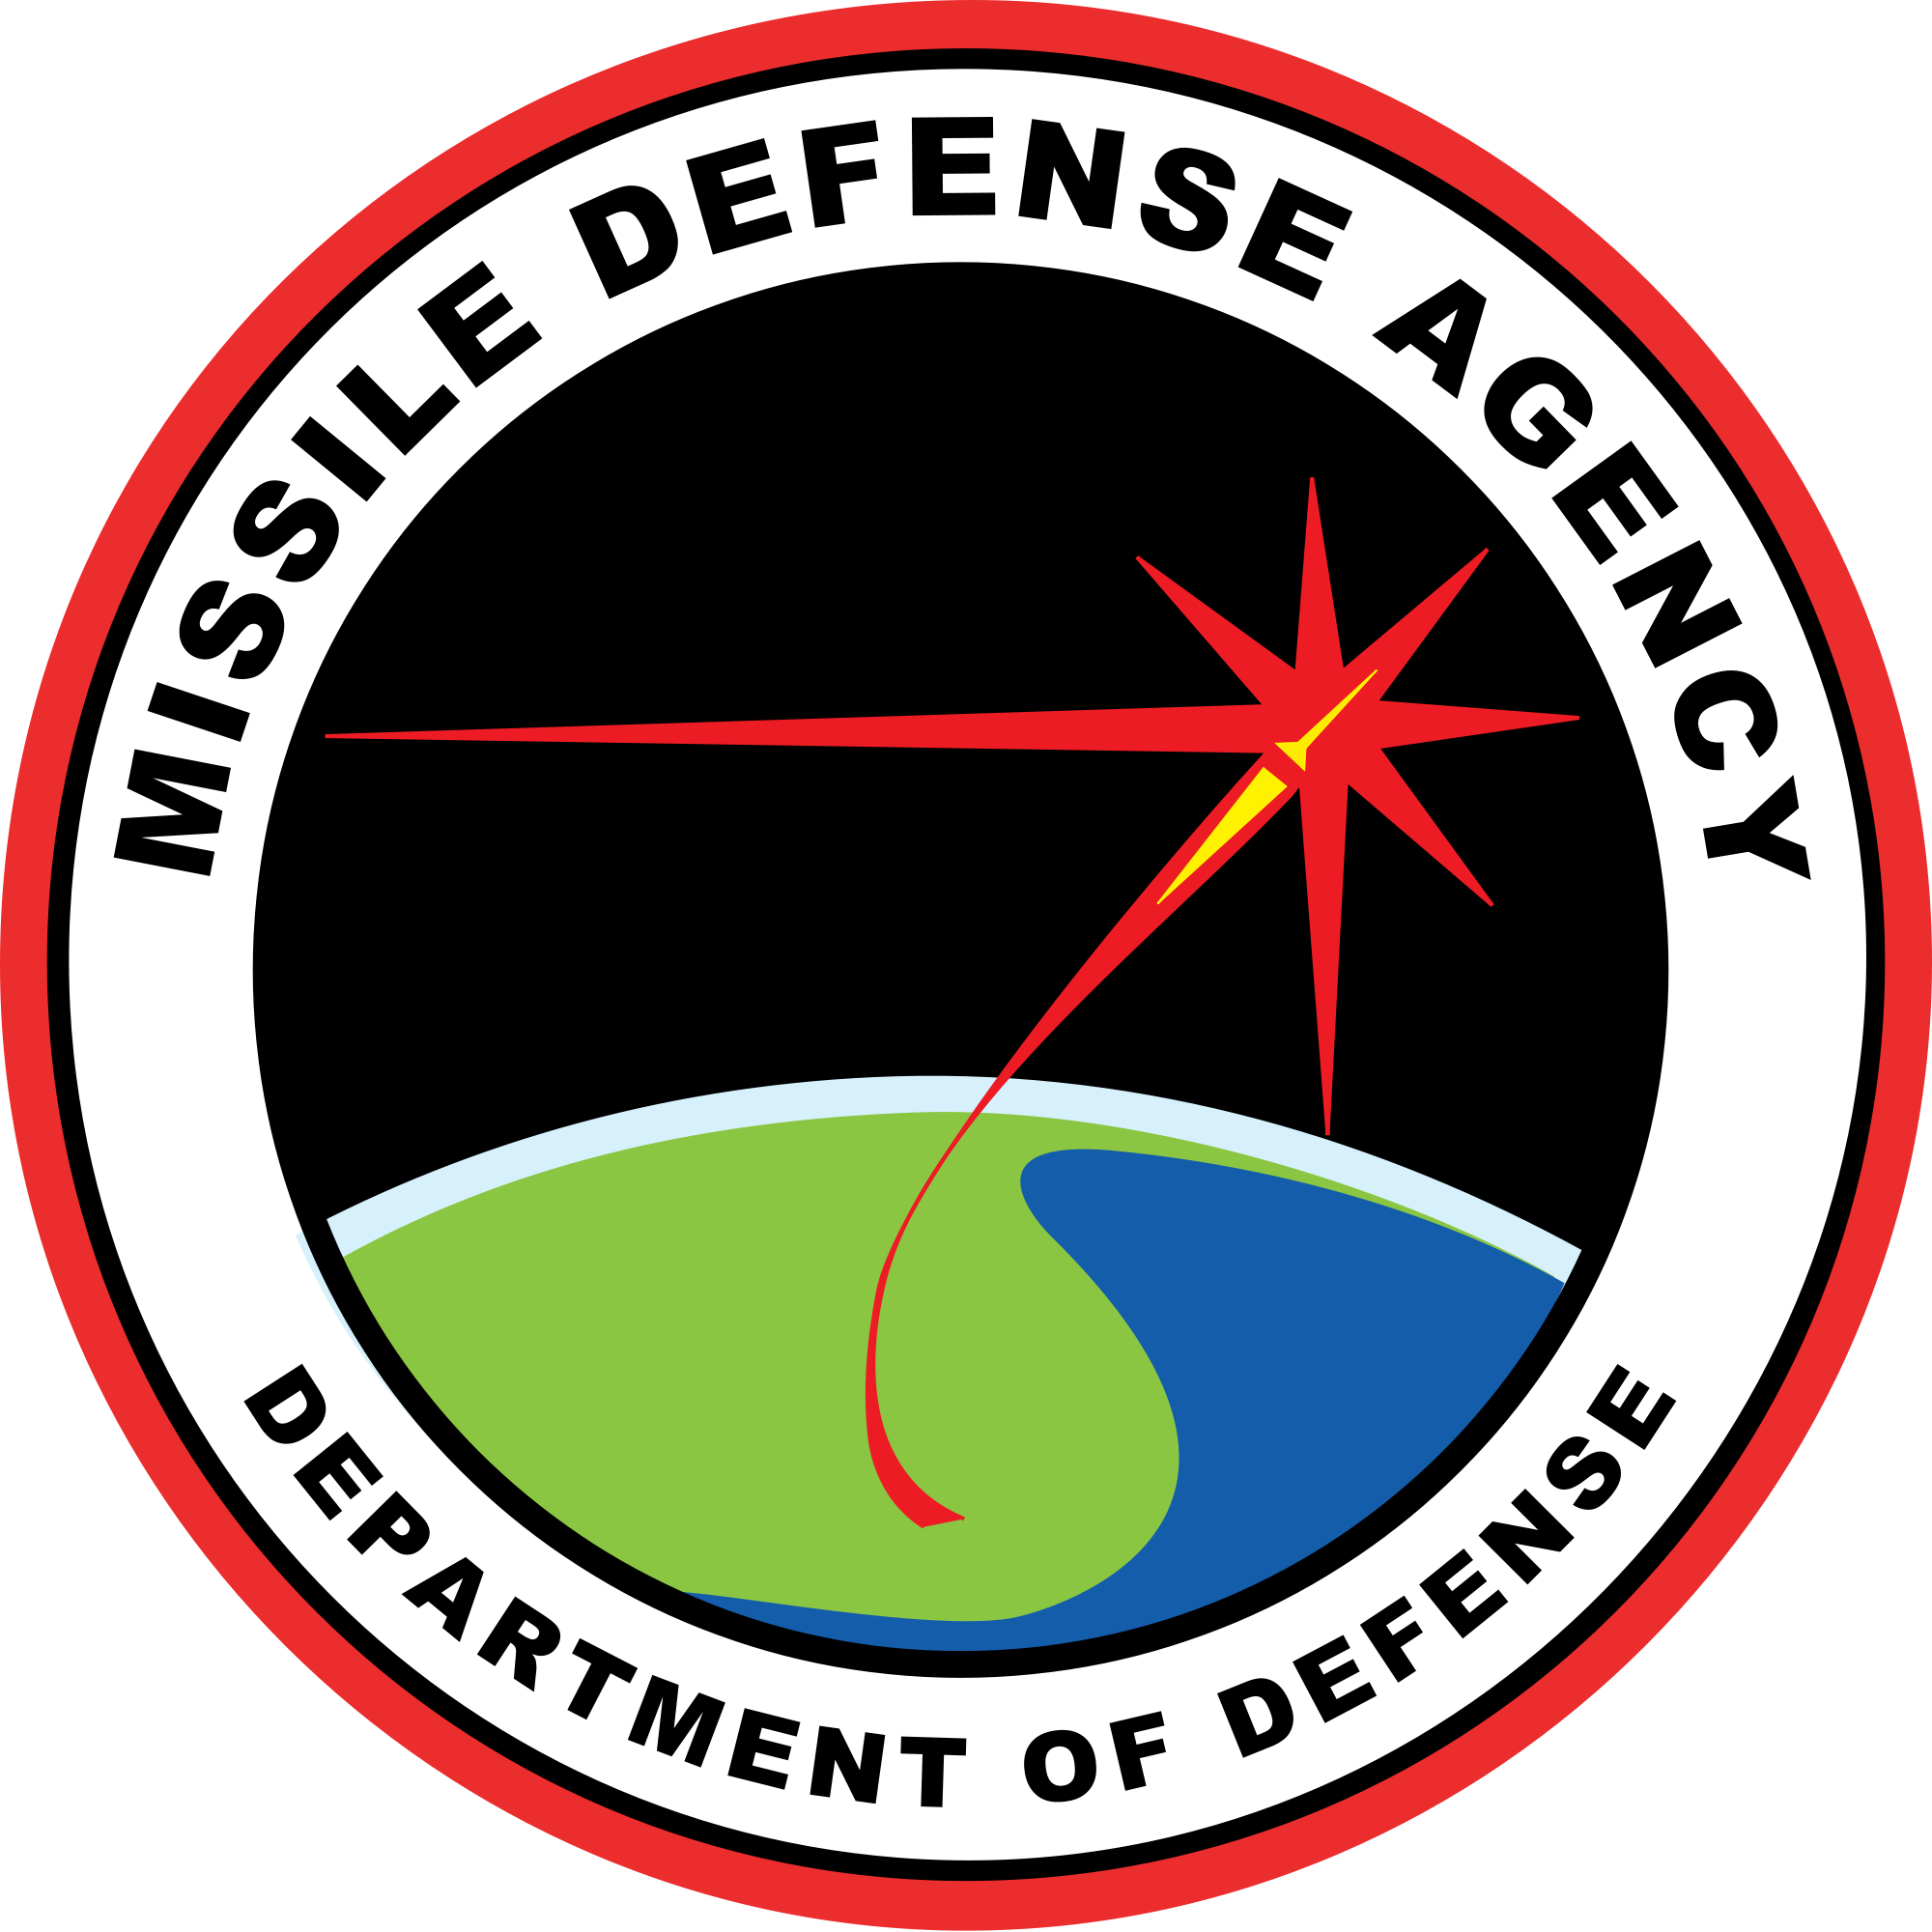 missile defense logo high resolution.png